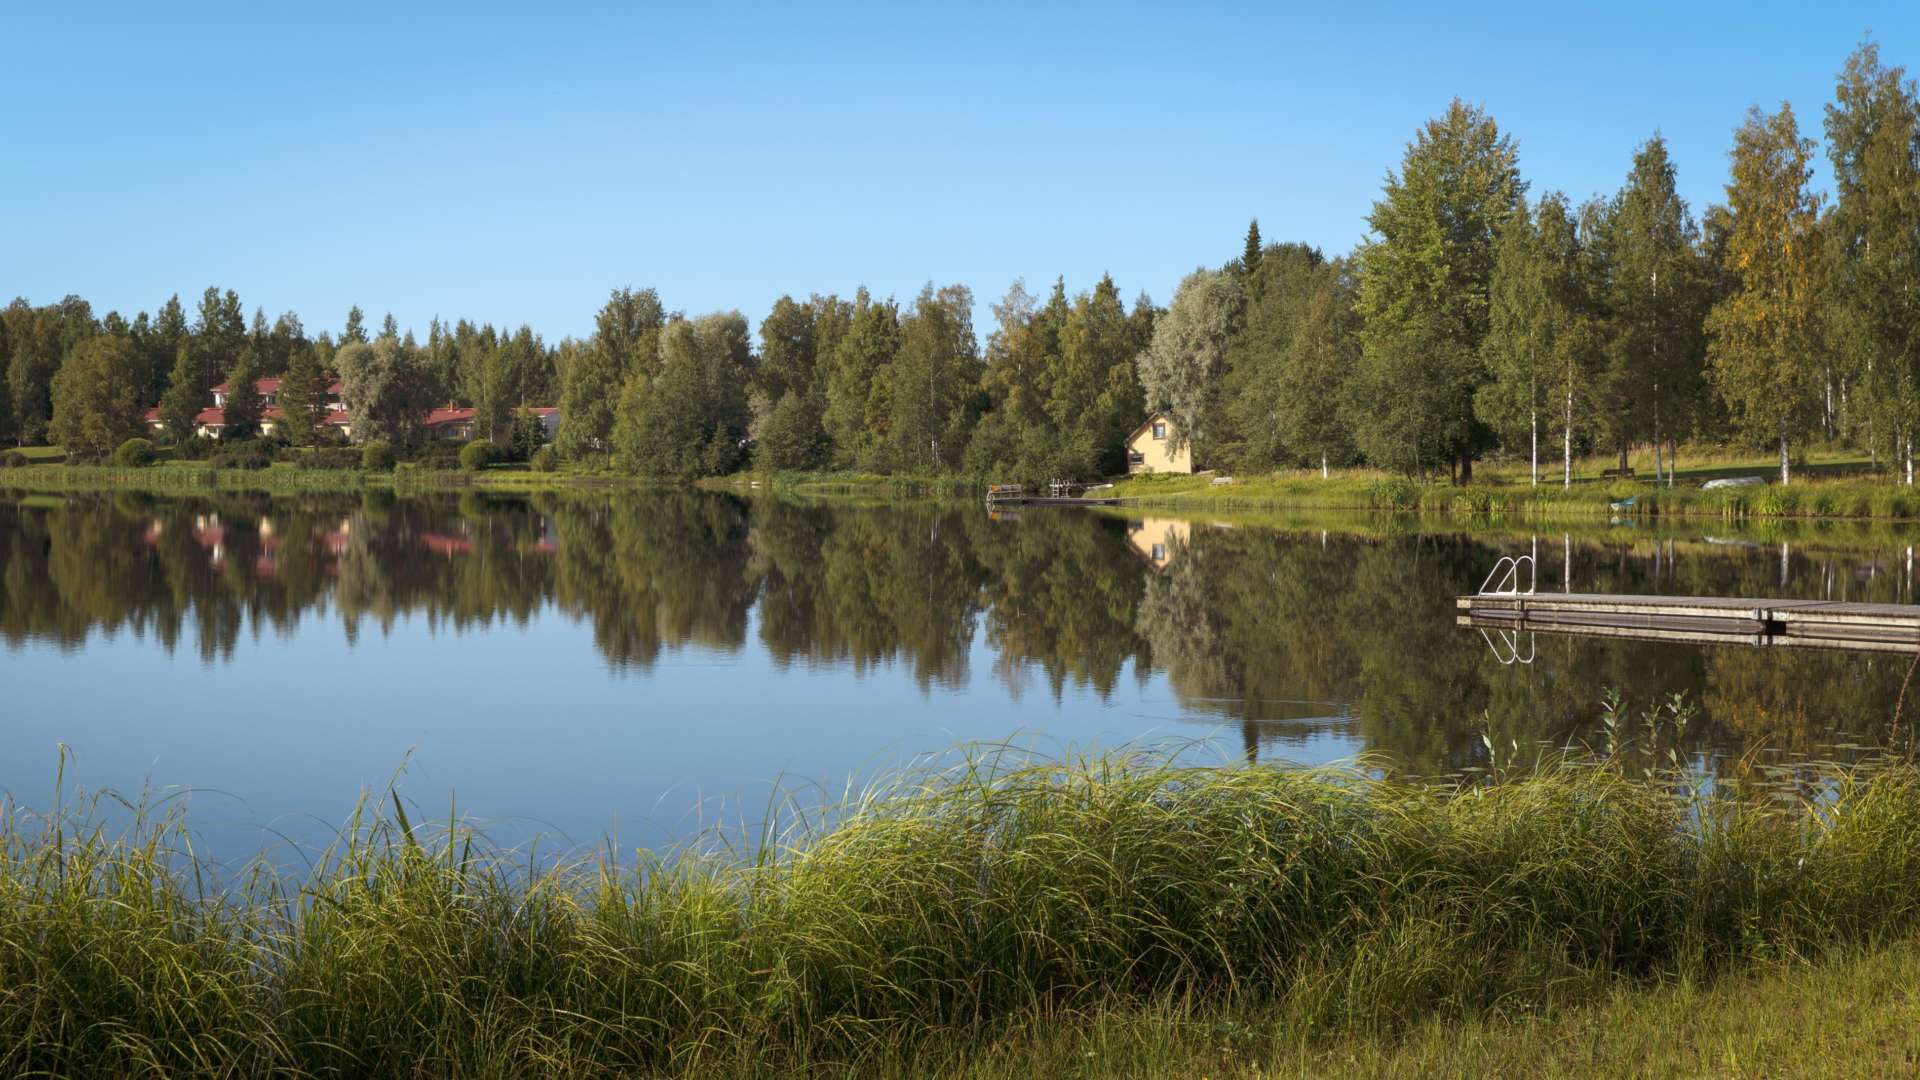 Tyyni järvi ja ympäristö kesällä. Järven rannalla on kaksi laituria. Järven vastarannalla on puita ja talo.